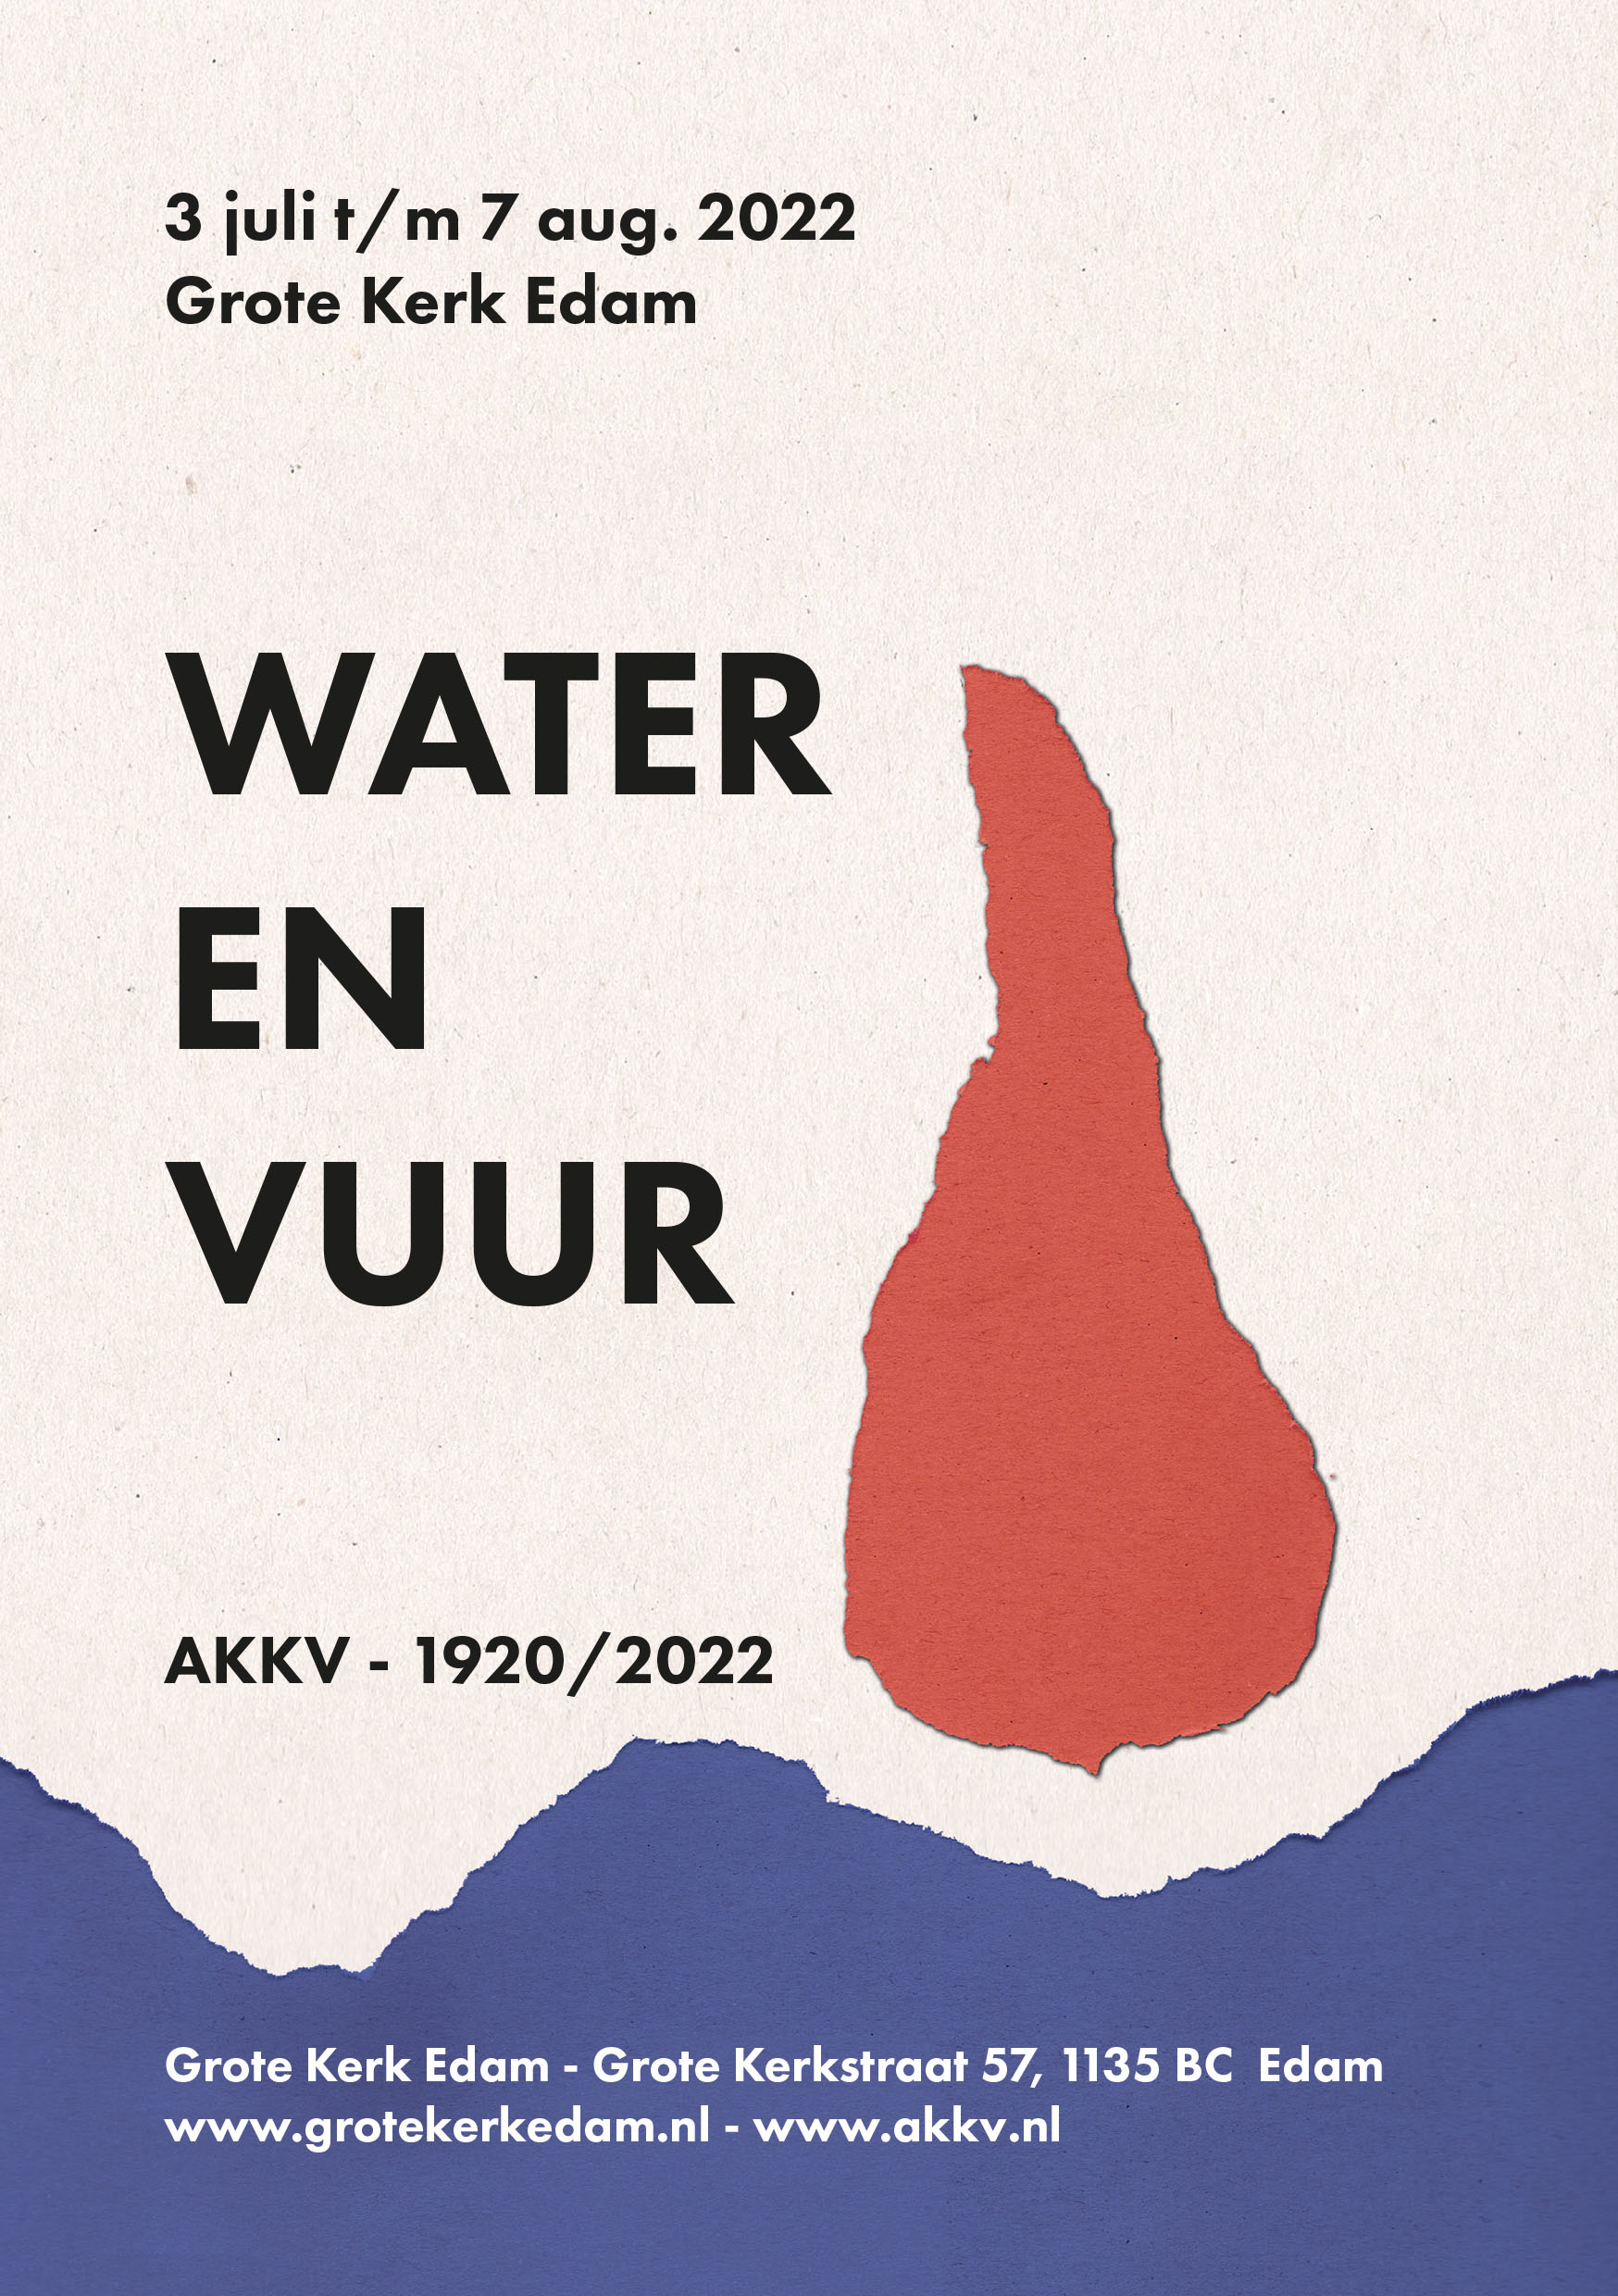 Flyer AKKV Water en vuur Edam - Voorkant2479jpg